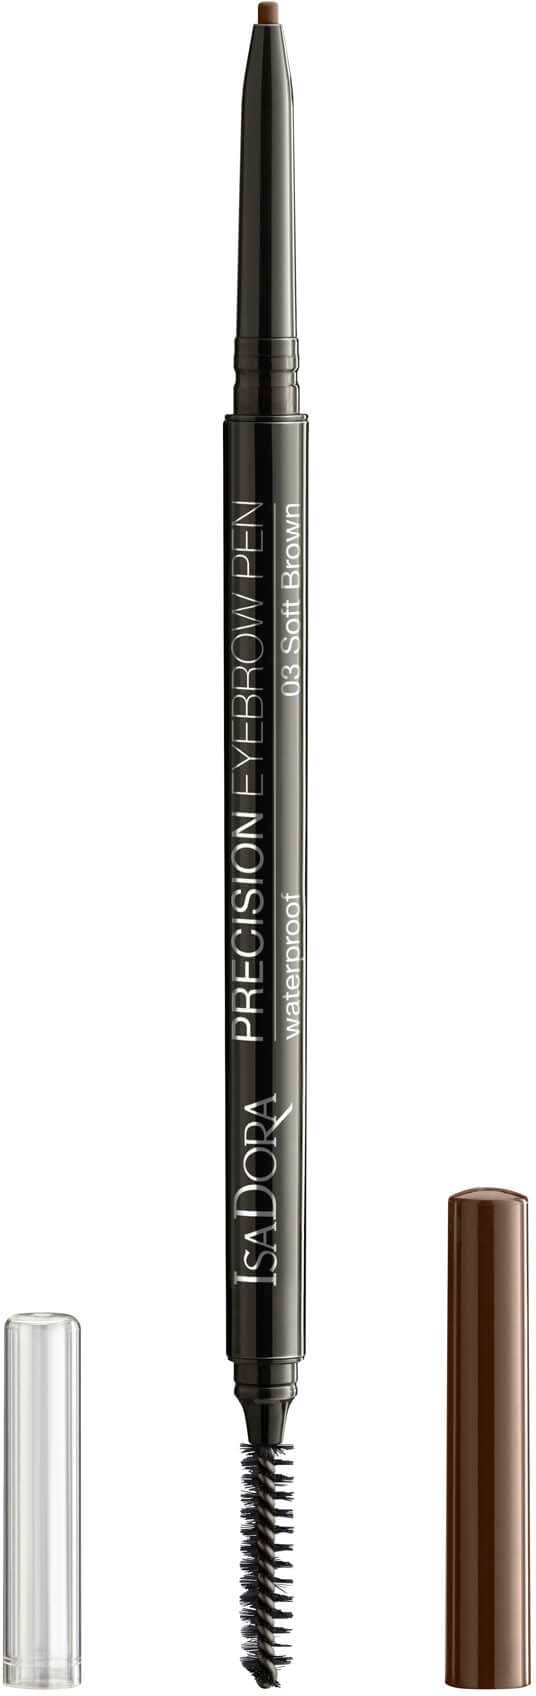 IsaDora Precision Eyebrow Pen Soft Brown 3 0.09g